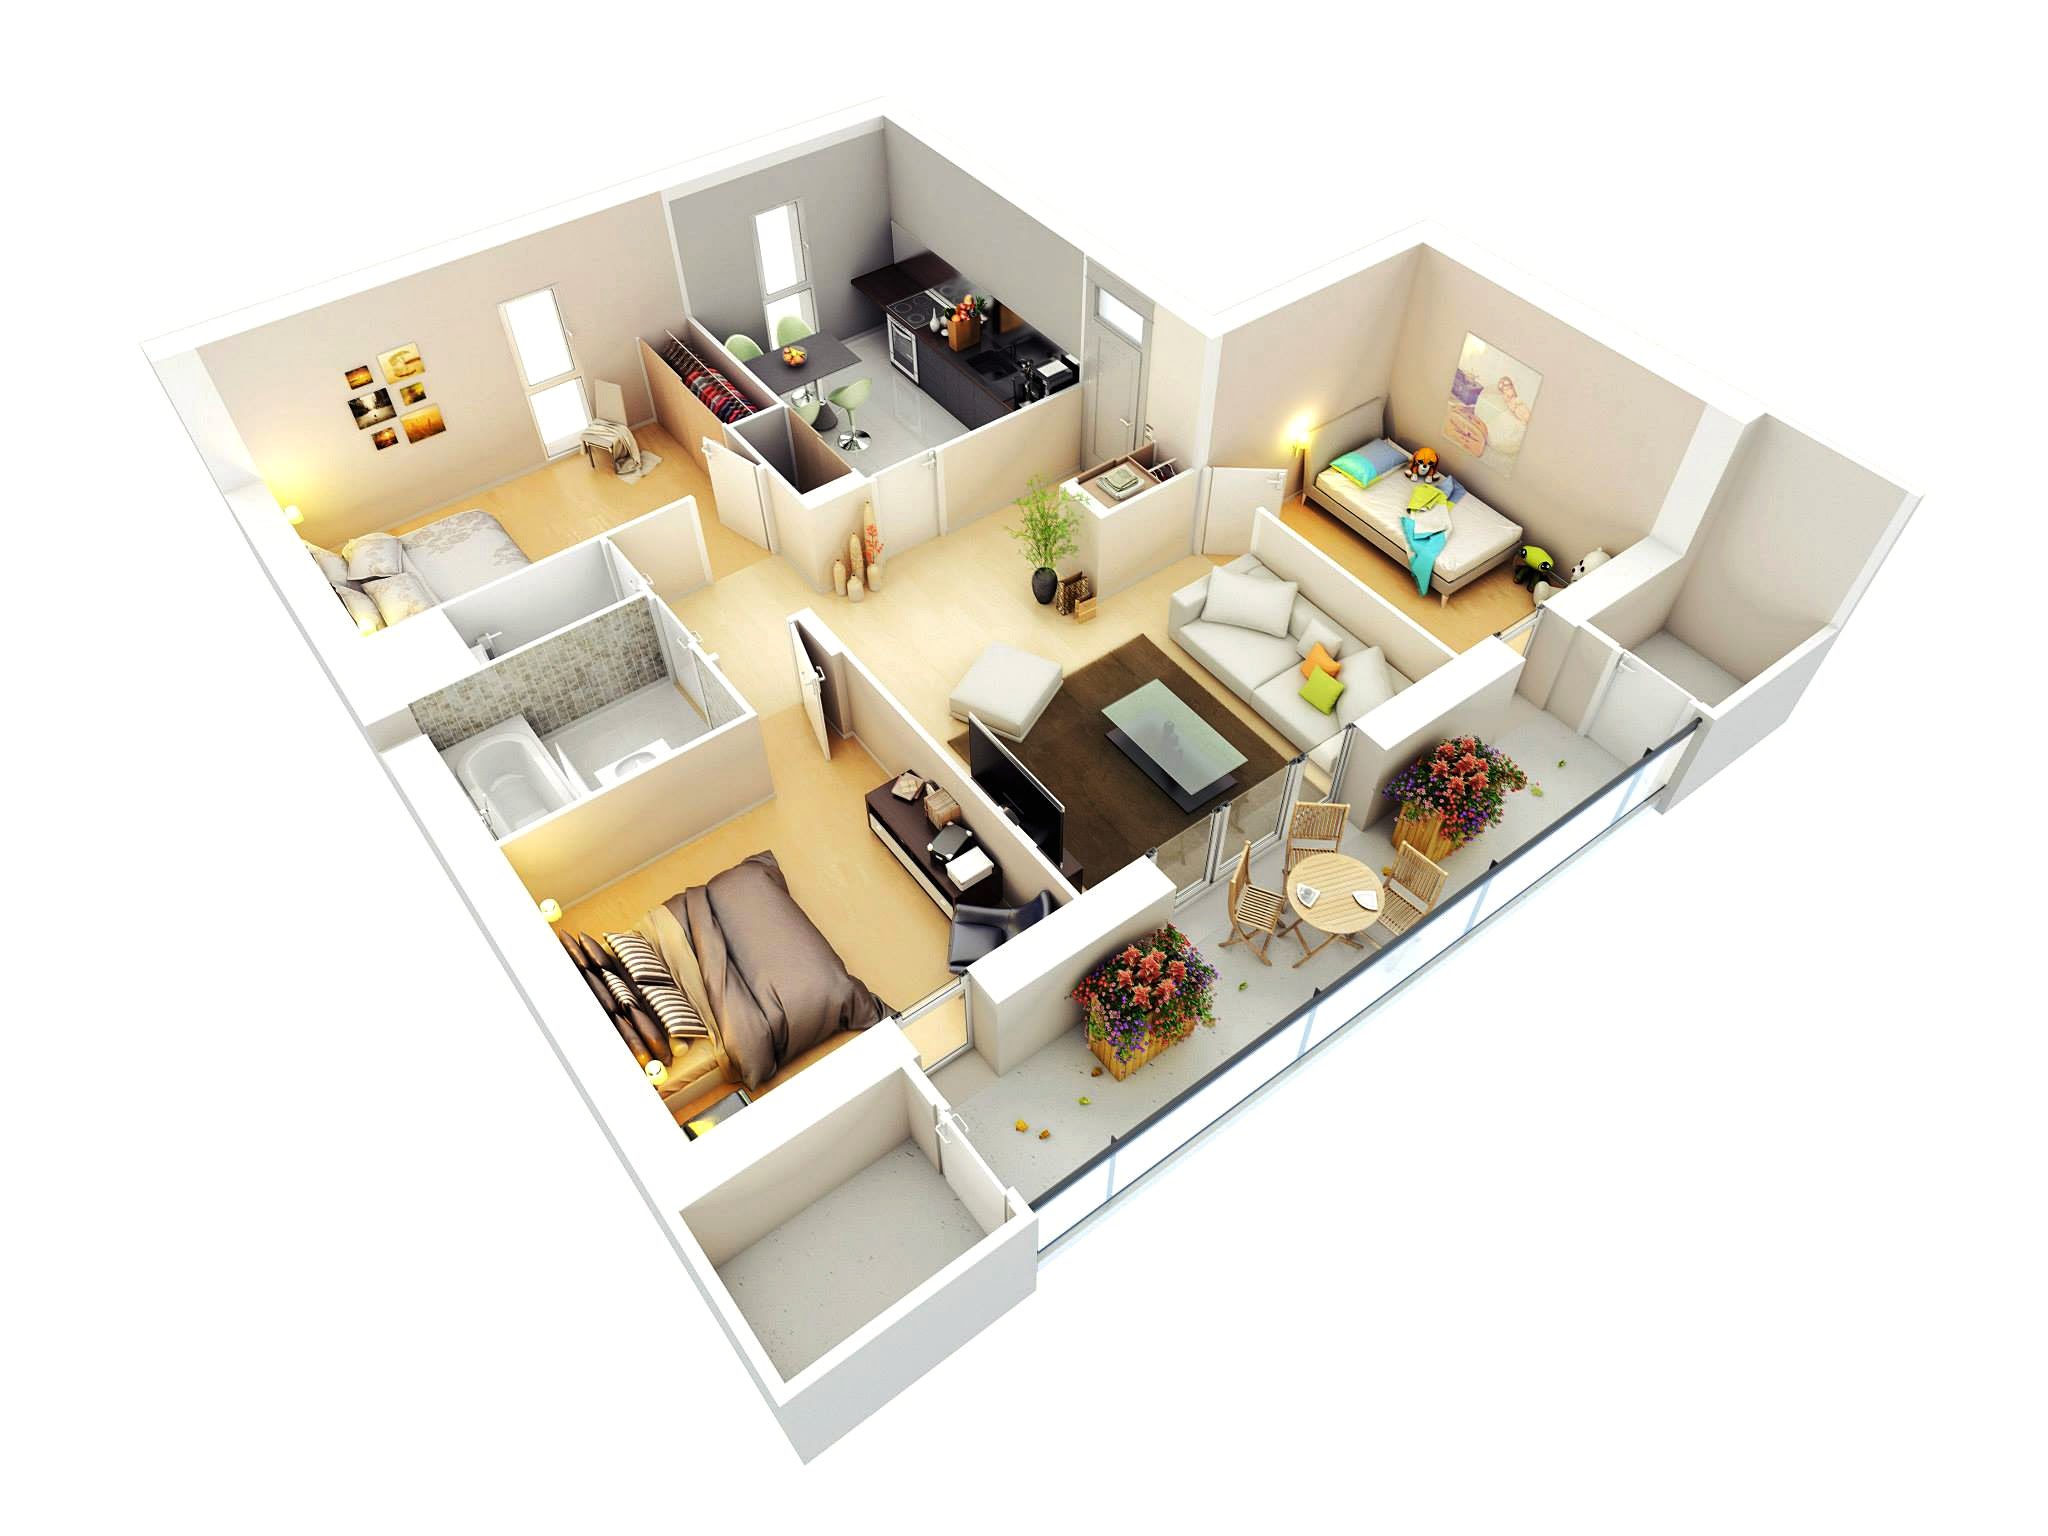 45 Model Desain Rumah Minimalis Sederhana 3 Kamar Tidur Paling Populer Di Dunia Deagam Design